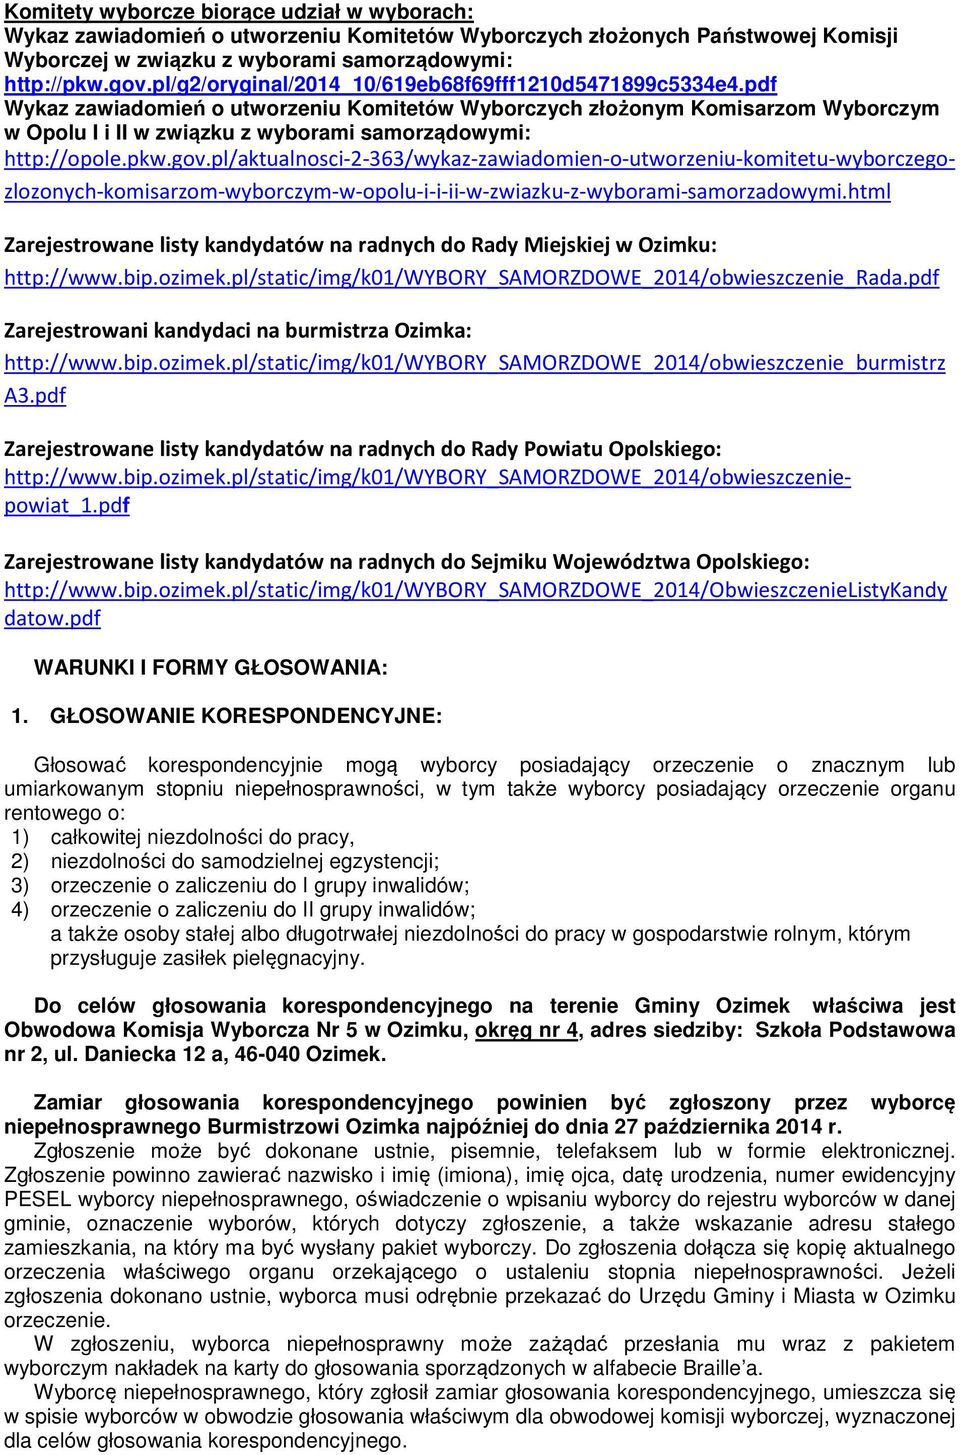 pkw.gov.pl/aktualnosci-2-363/wykaz-zawiadomien-o-utworzeniu-komitetu-wyborczegozlozonych-komisarzom-wyborczym-w-opolu-i-i-ii-w-zwiazku-z-wyborami-samorzadowymi.